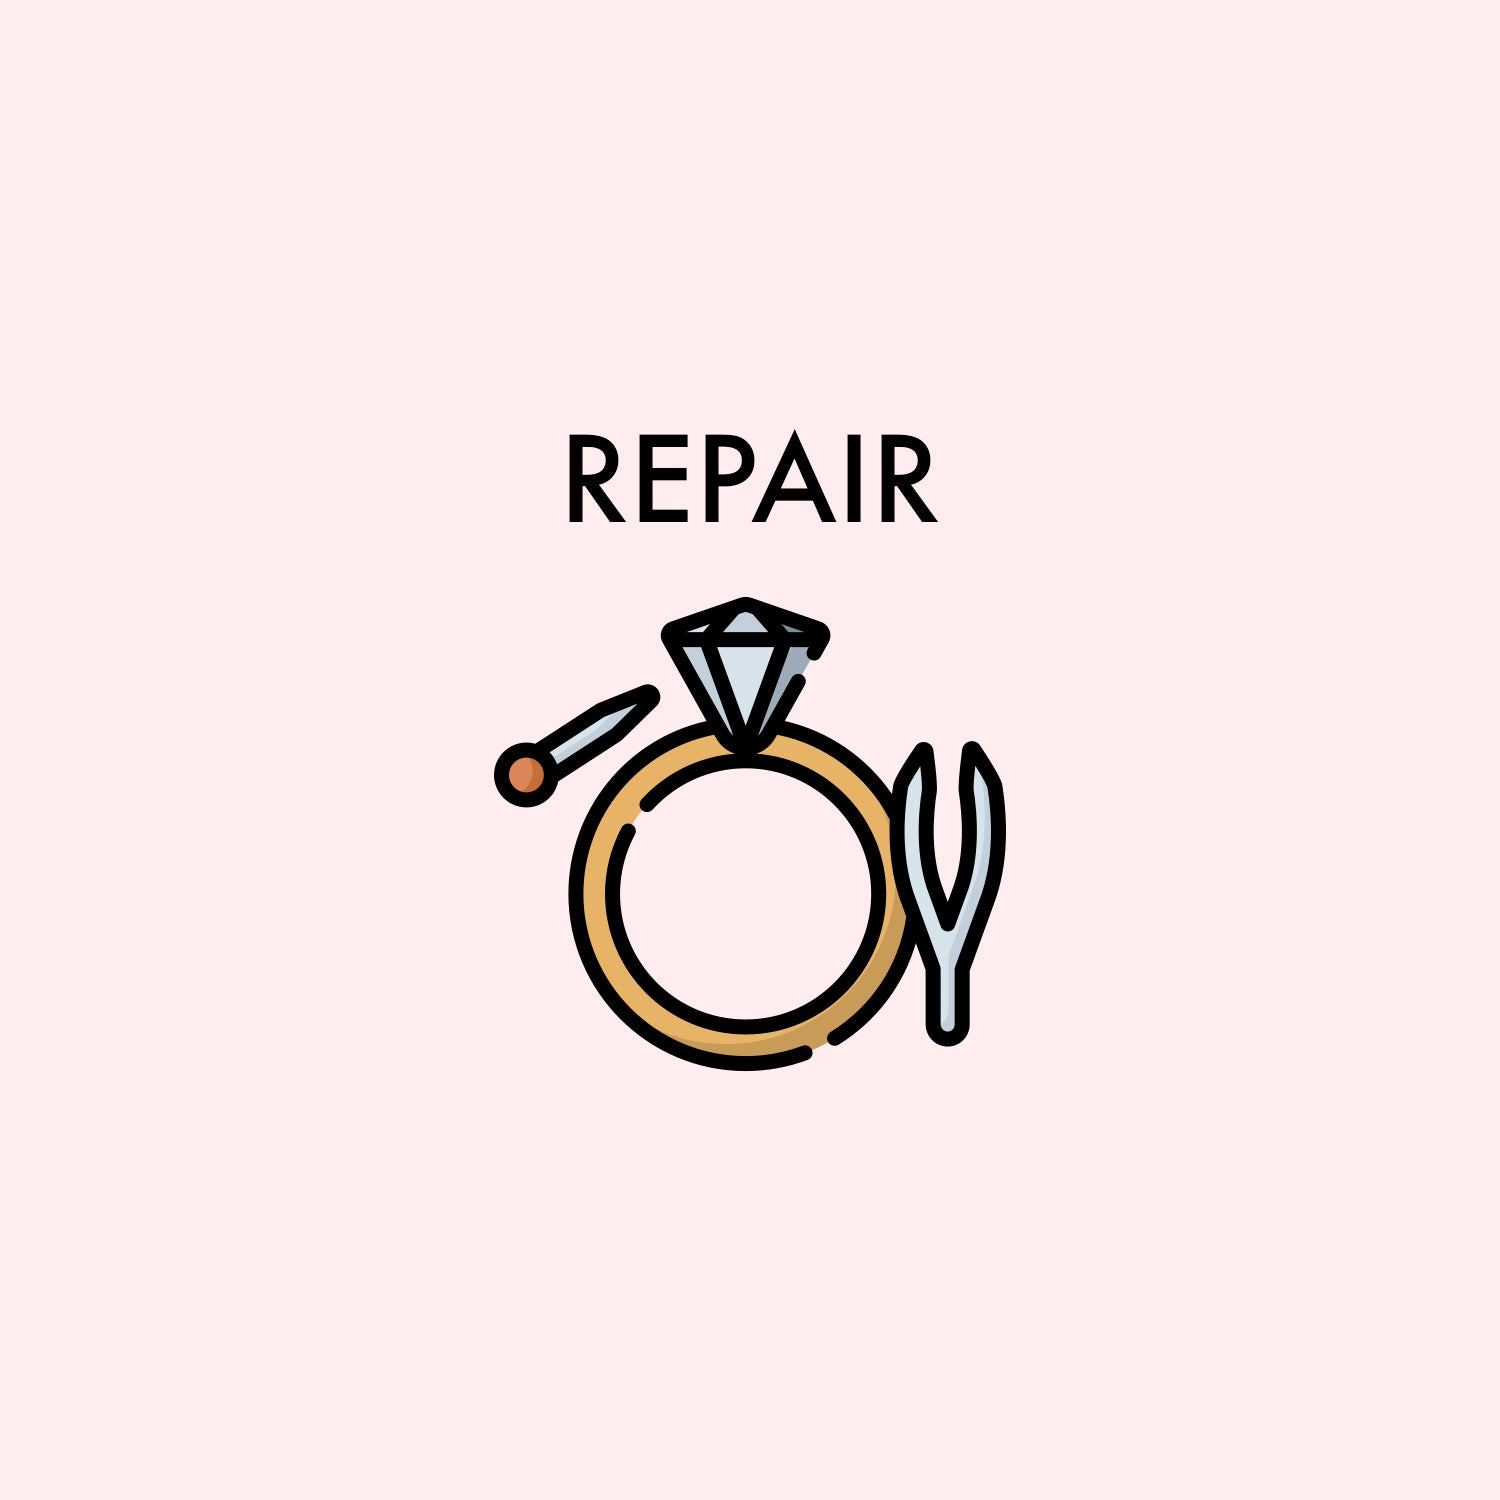 repair_a26b3a35-2ccb-4904-988b-3bc9a0a676af.jpg